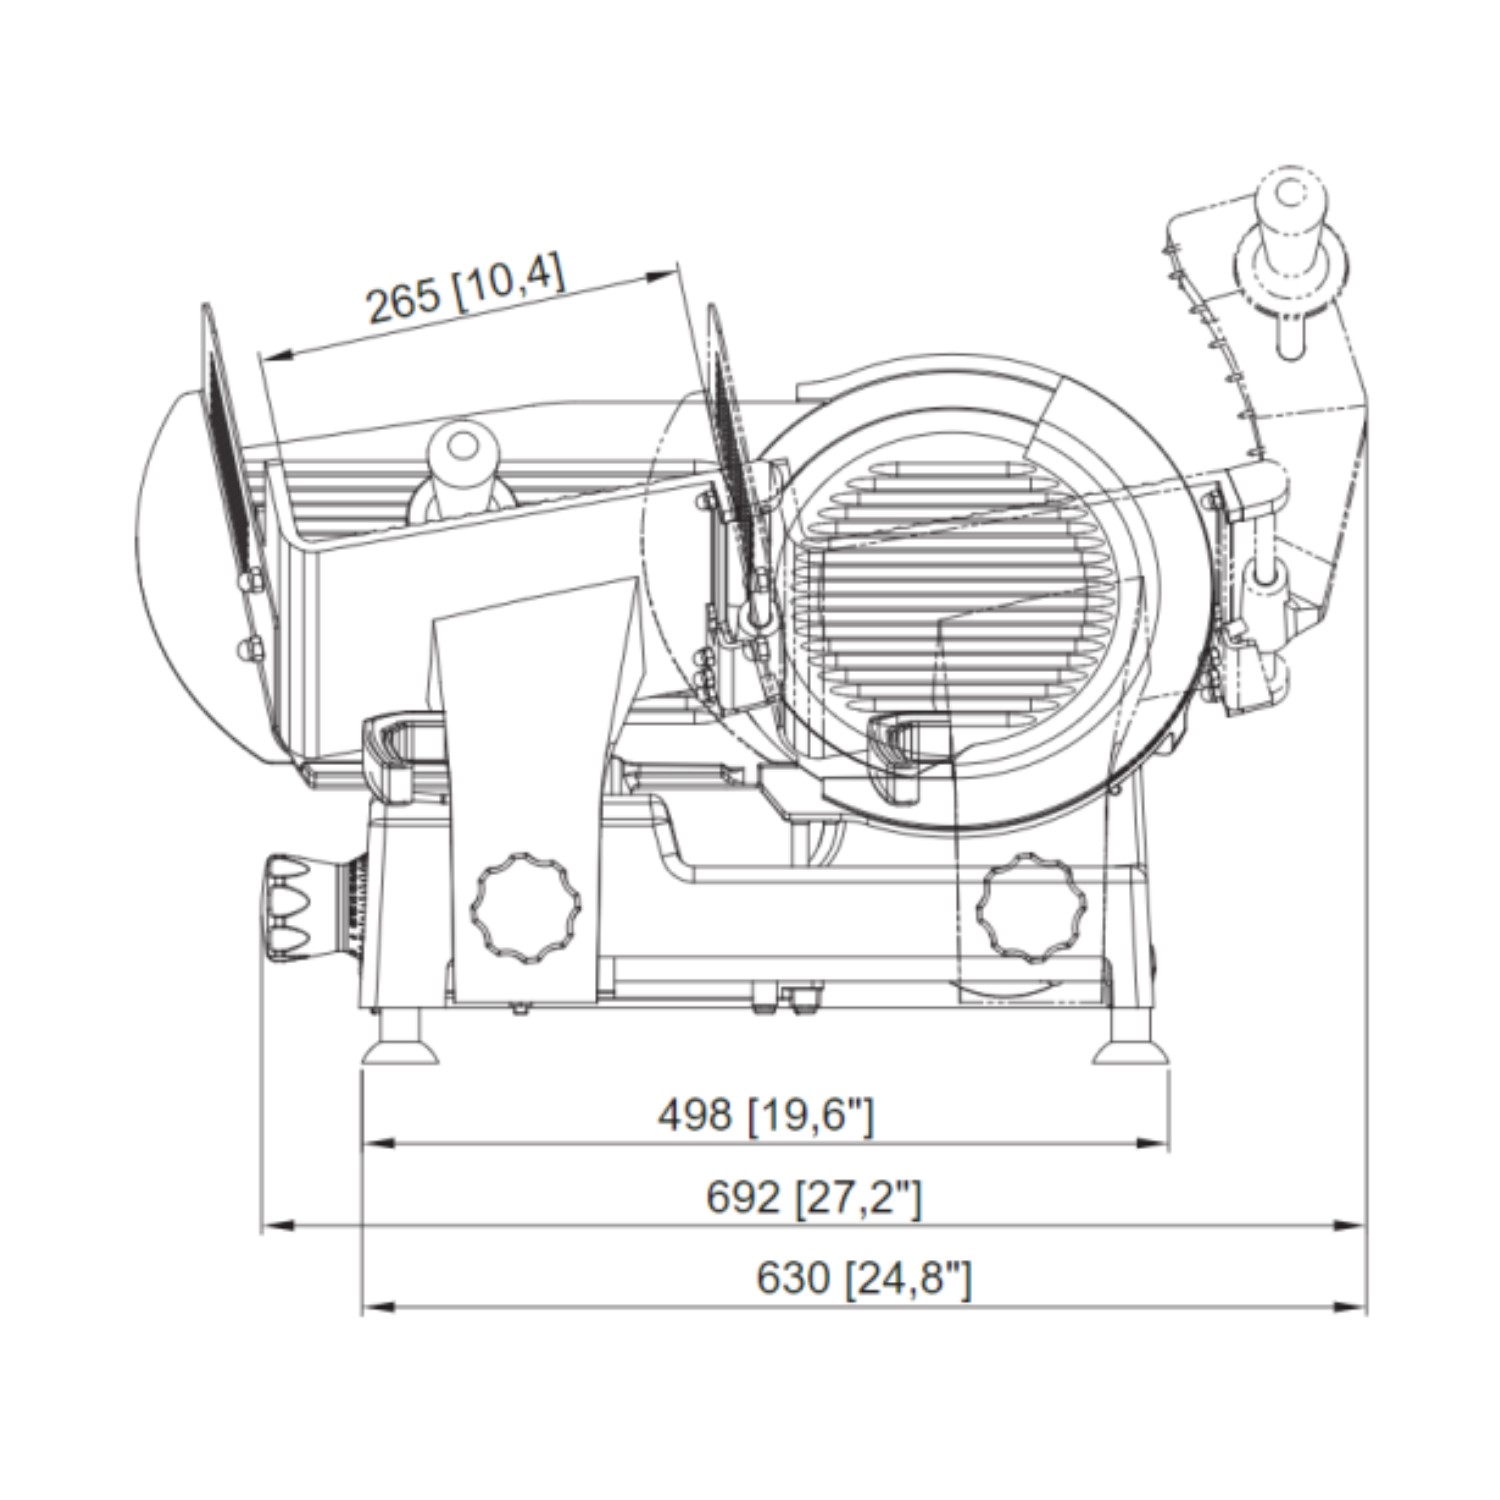 Bizerba GSE Dilimleme Makinası Yatık -7.jpg (177 KB)